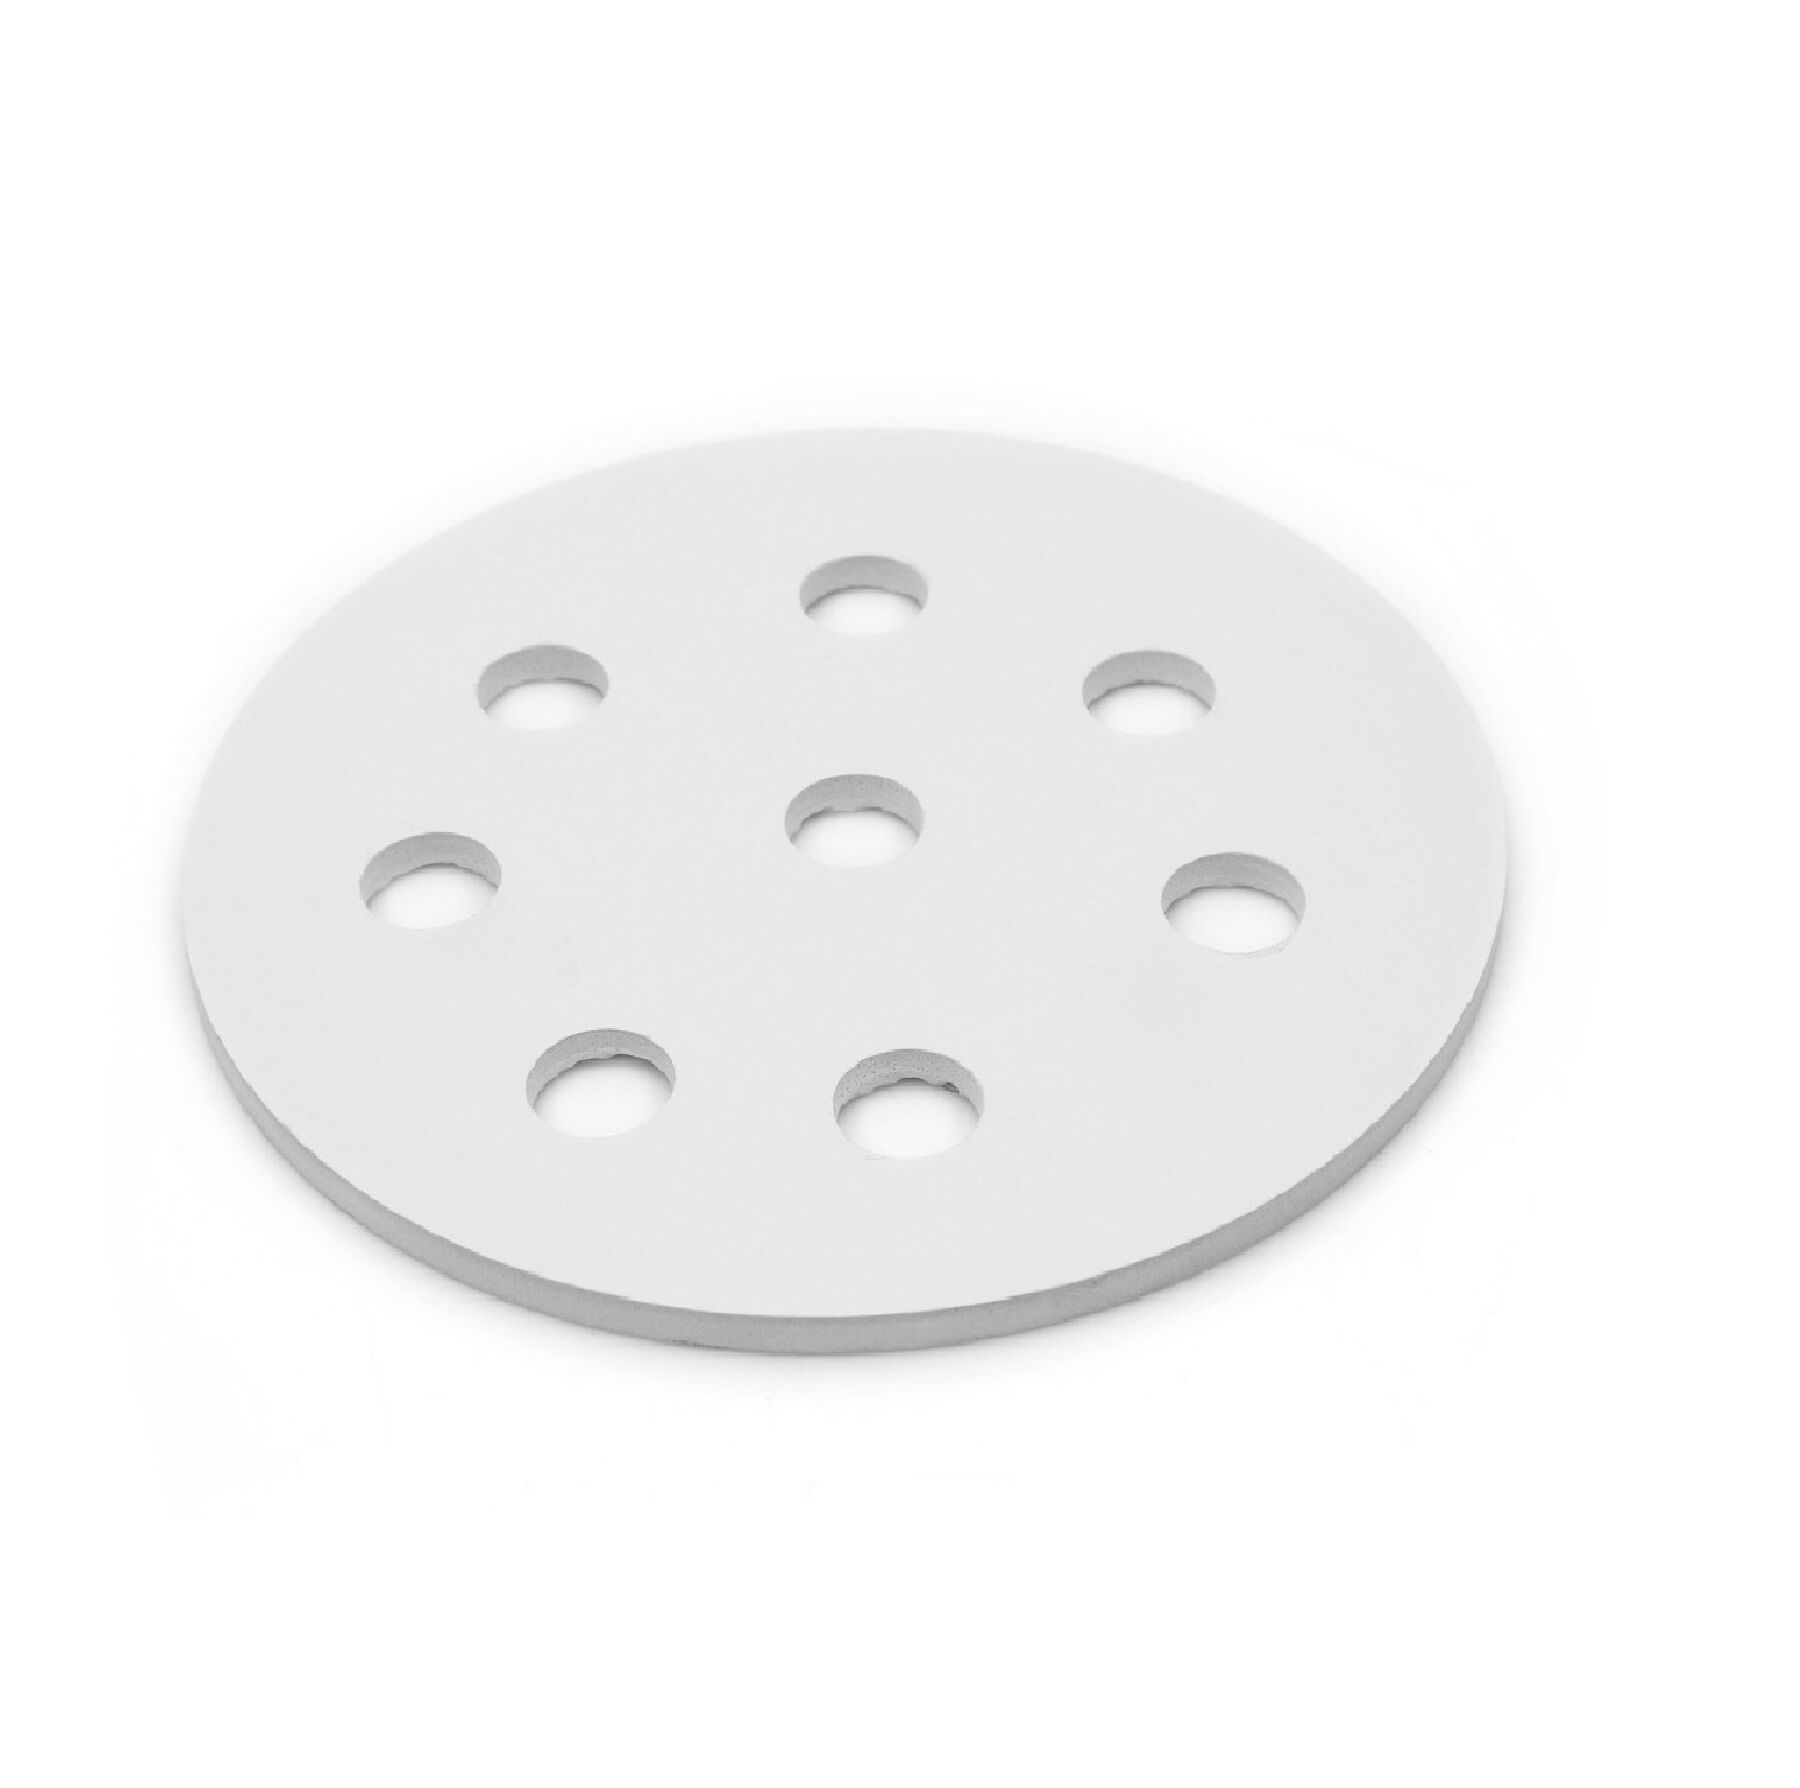 Porselen Disk-Desikatör Plakası- 240 mm- Porselain Plate For Dessicator